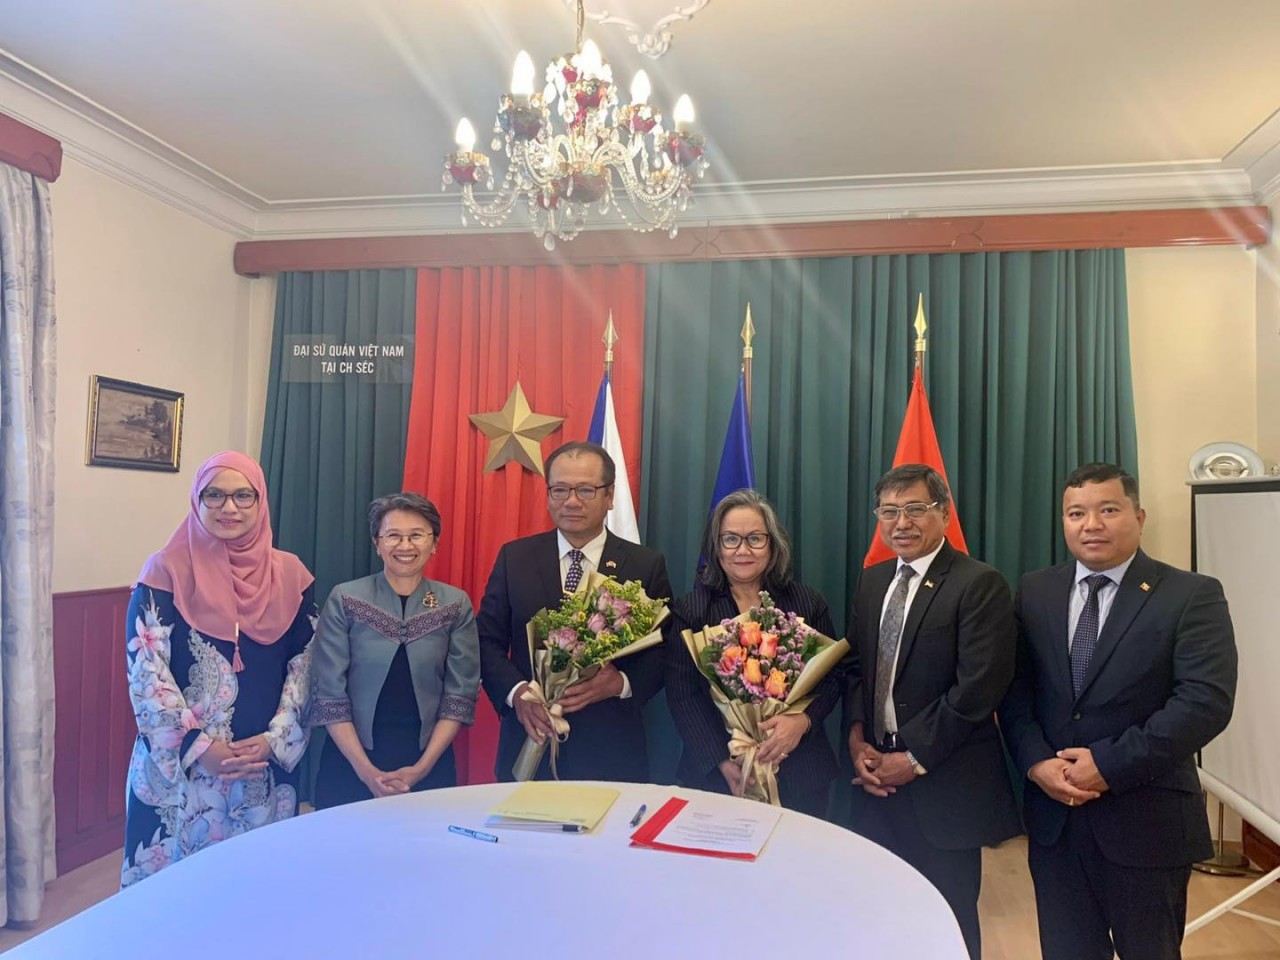 Đại sứ quán Việt Nam tại Séc hoàn thành xuất sắc nhiệm kỳ Chủ tịch Ủy ban ASEAN Praha (ACP) từ 01/01 - 31/06/2022 và chủ trì Lễ bàn giao chức Chủ tịch cho ĐSQ Indonesia.